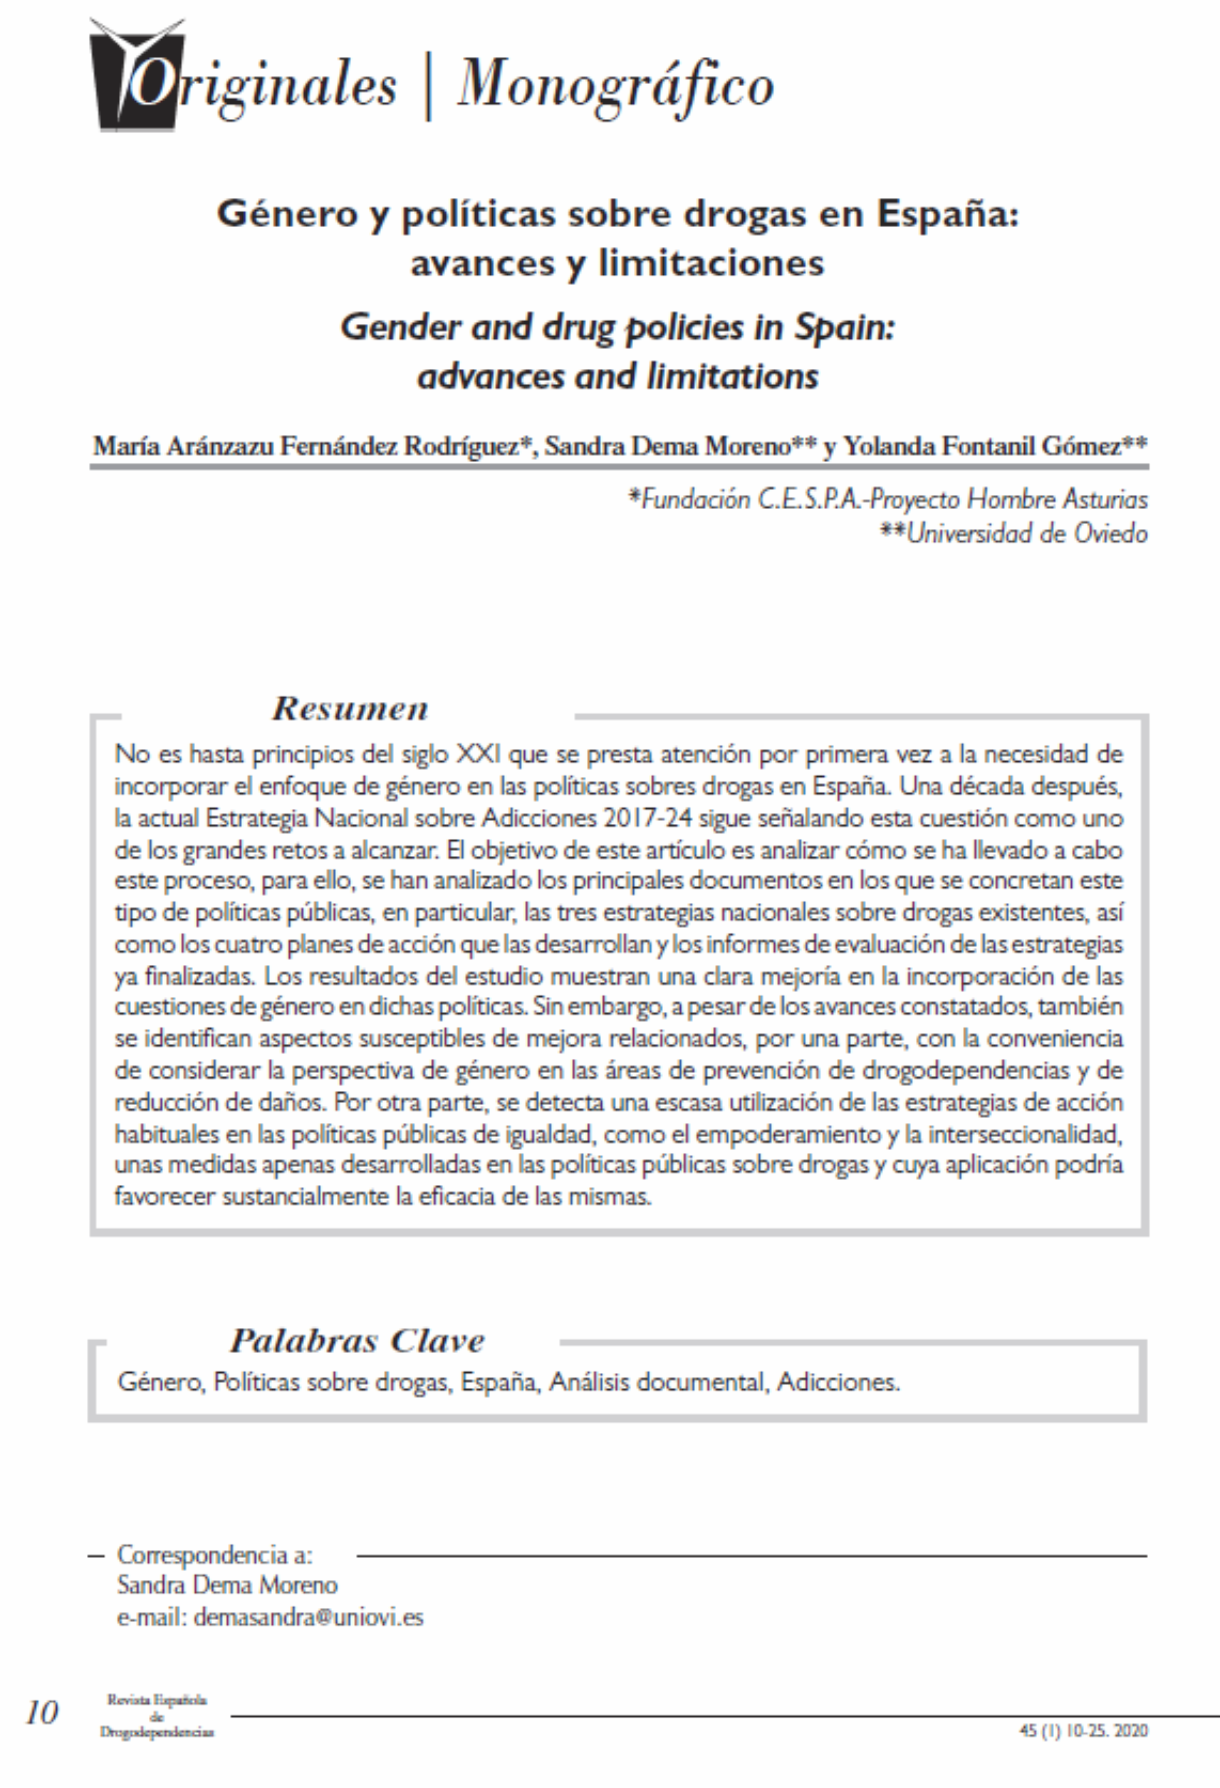 Fernández Rodríguez, M.A. et Al: Género y políticas sobre drogas en España: avances y limitaciones